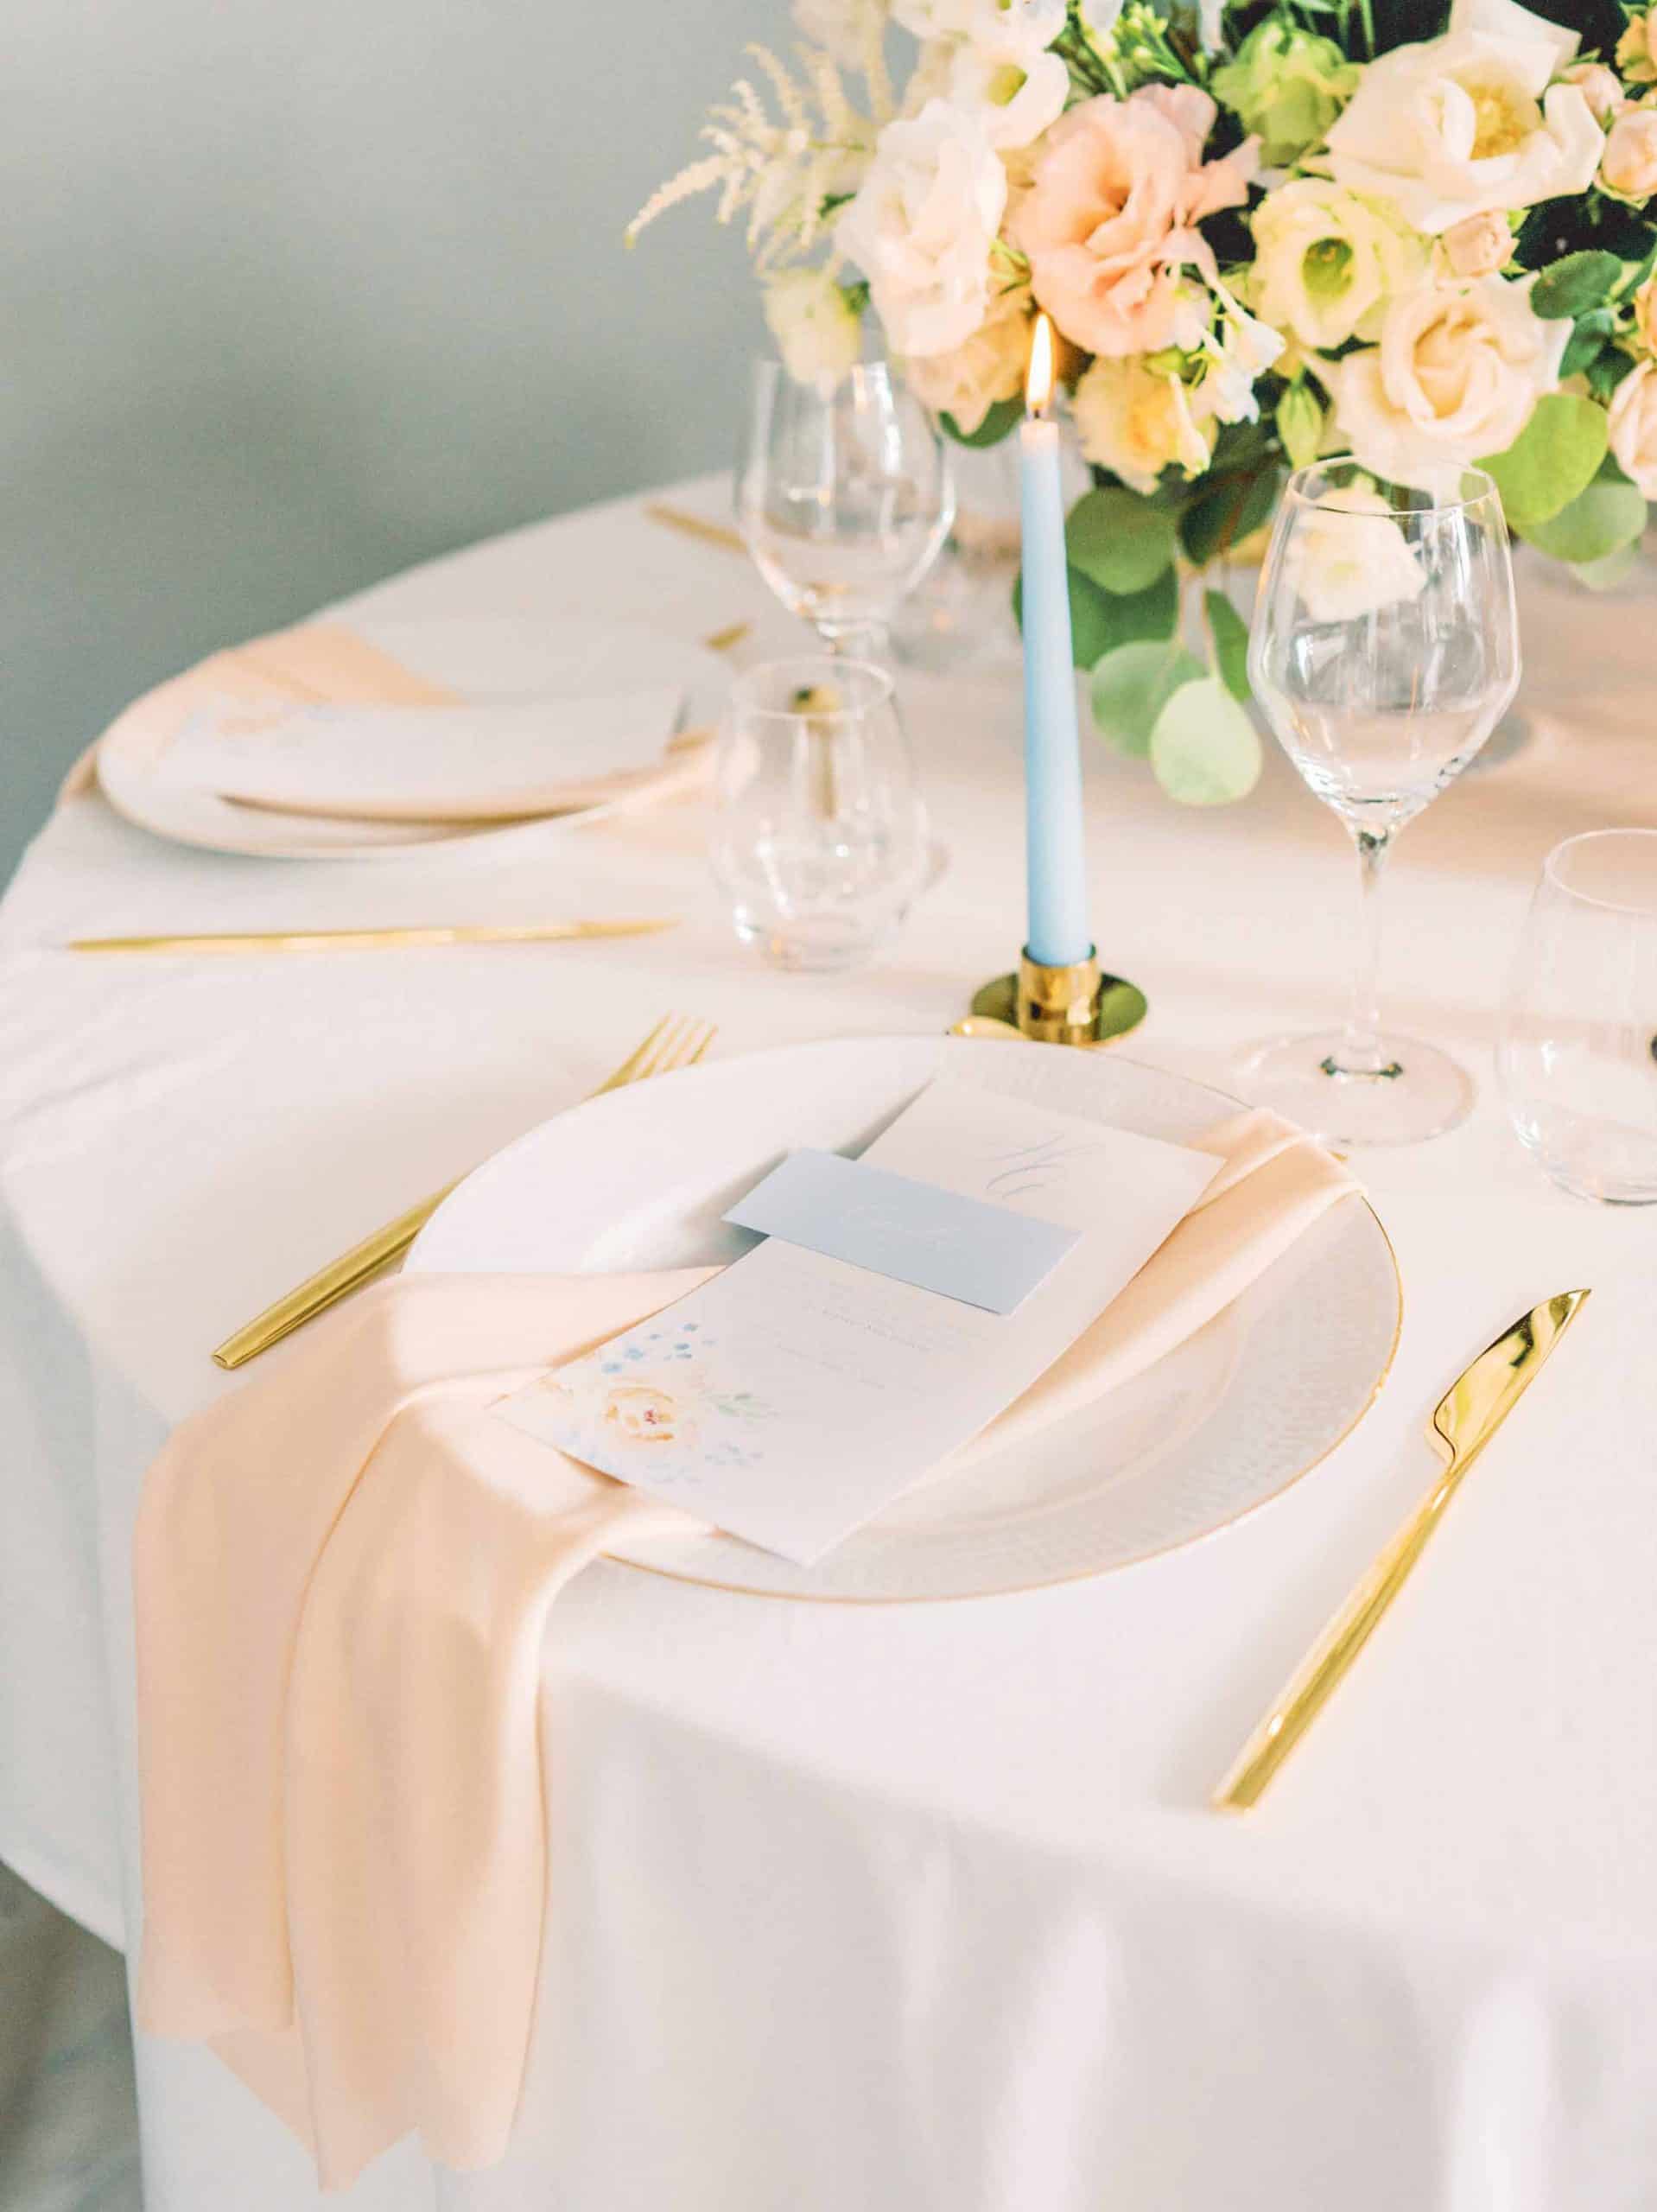 gullbestikk med fersken serviett, lyseblått bordkort og fersken blomsterbukett